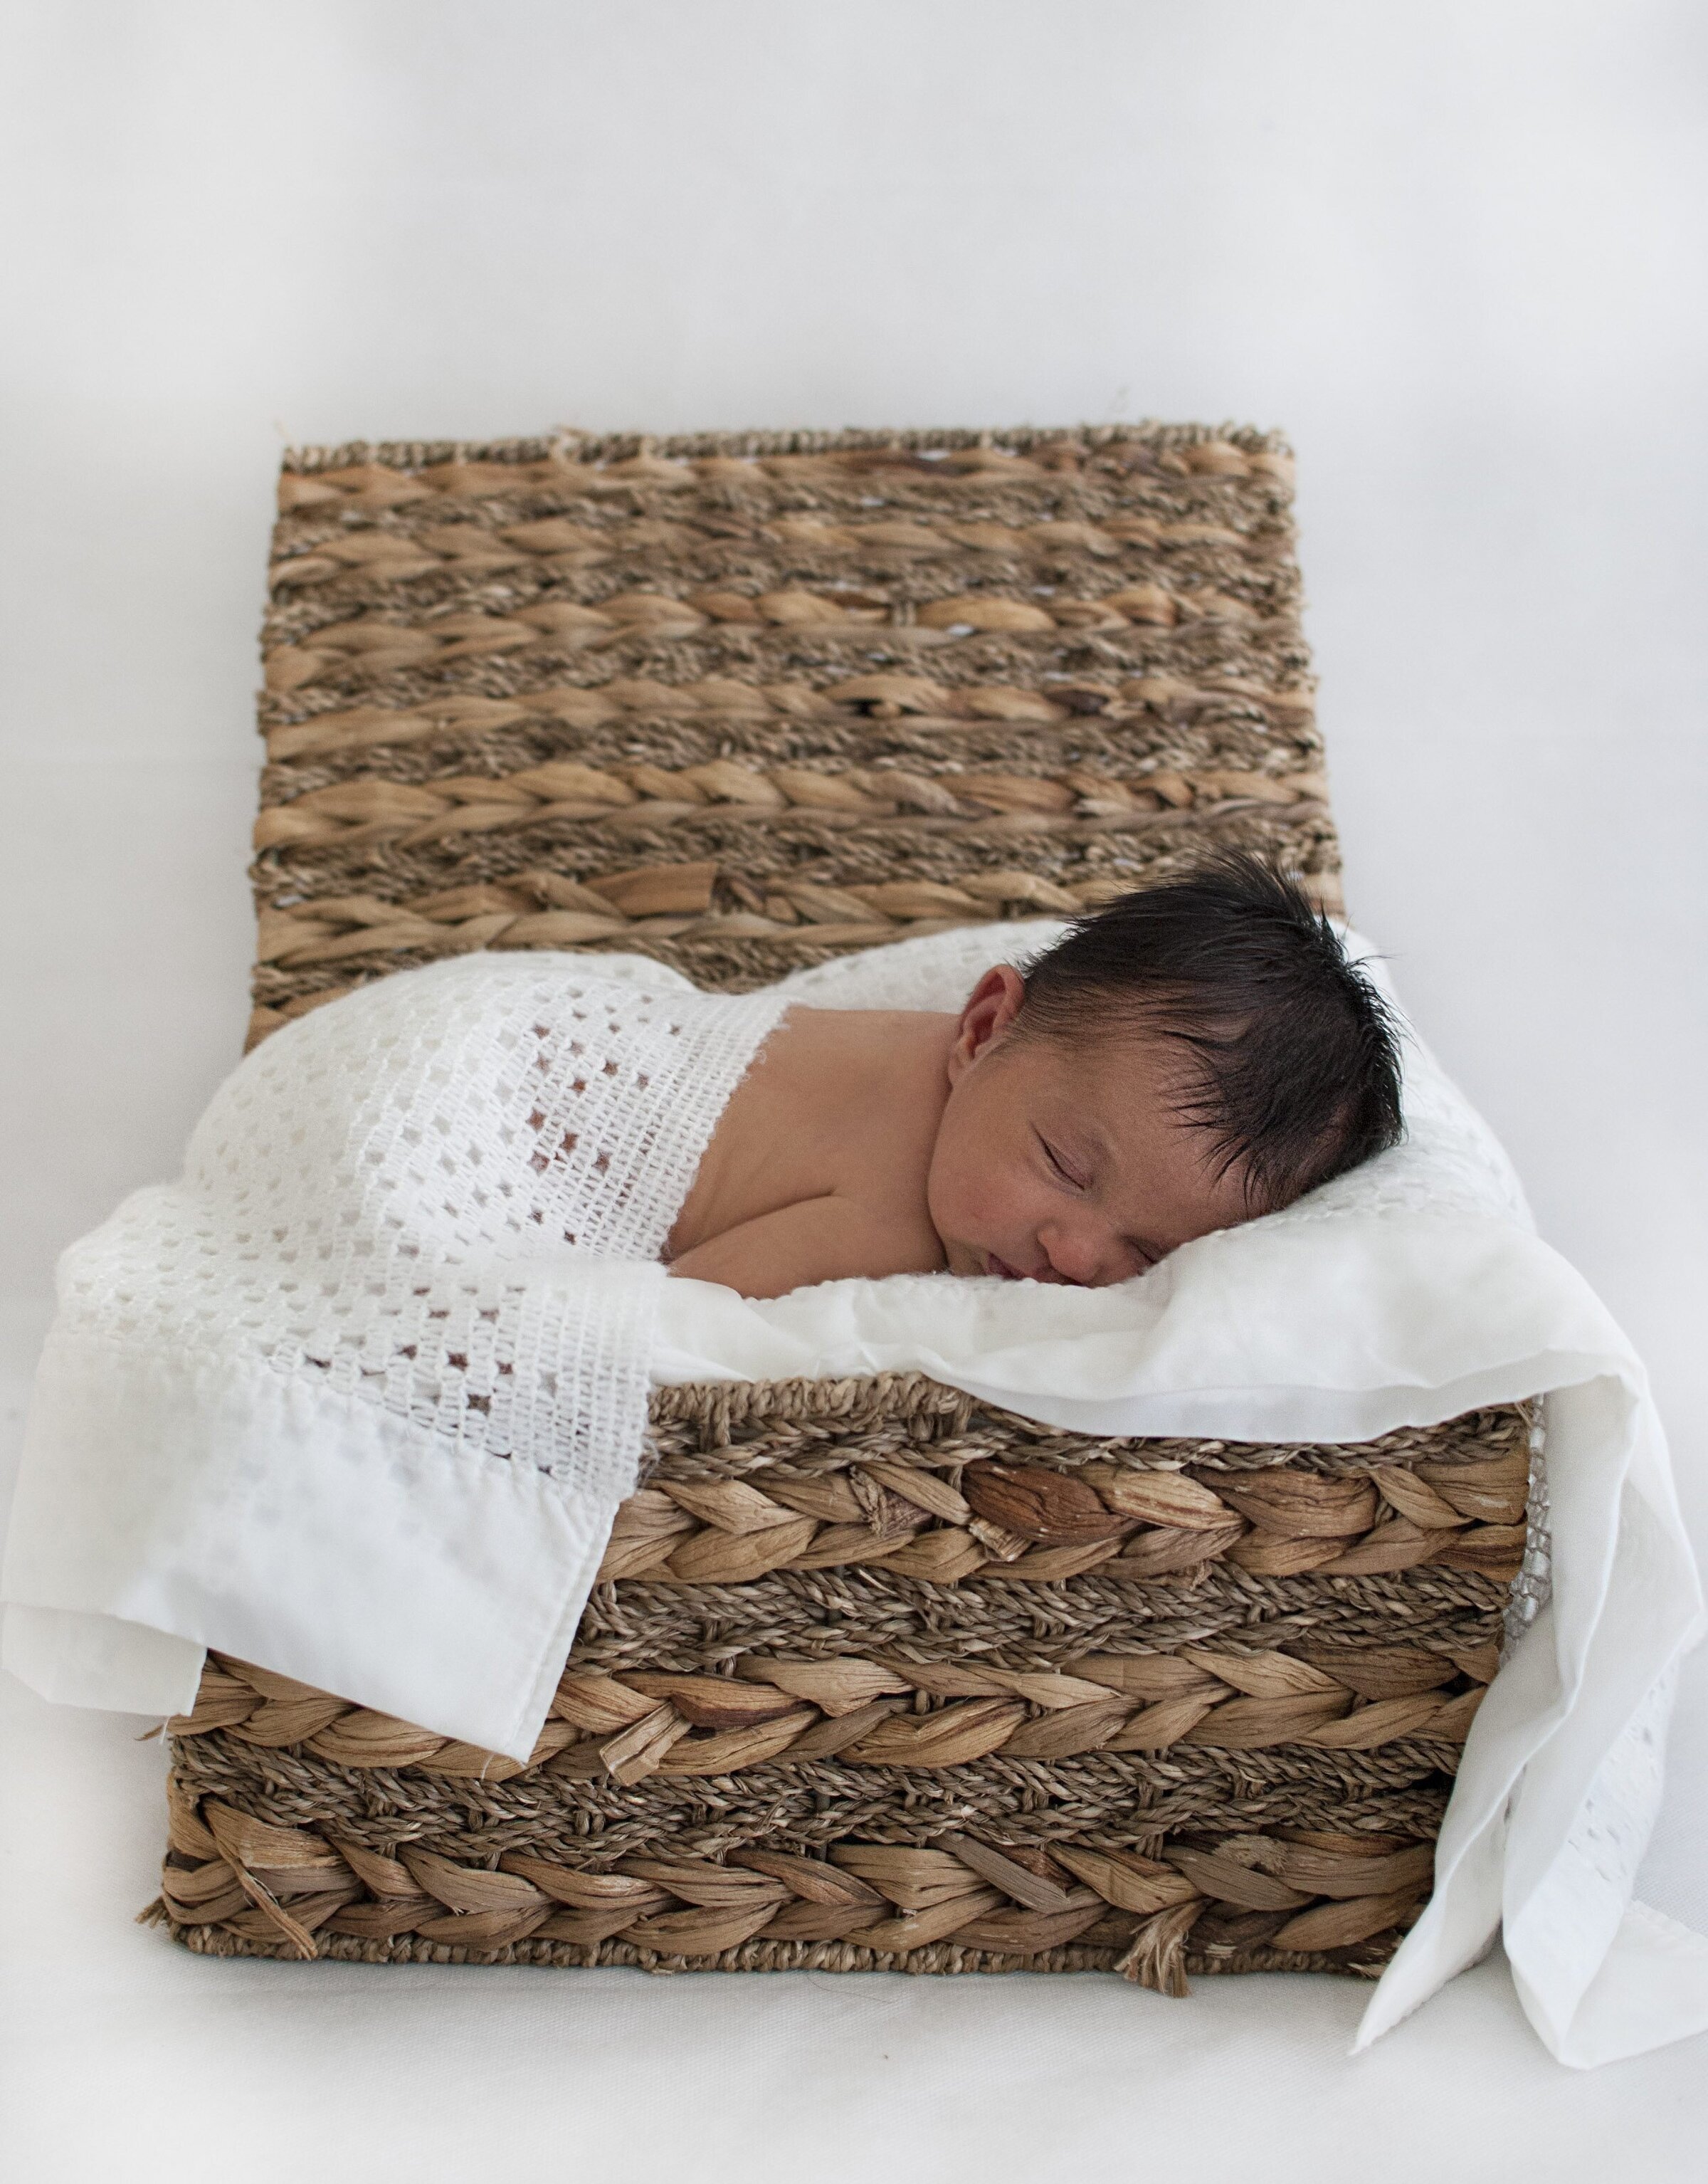 Newborn baby sleeping in a wicker basket